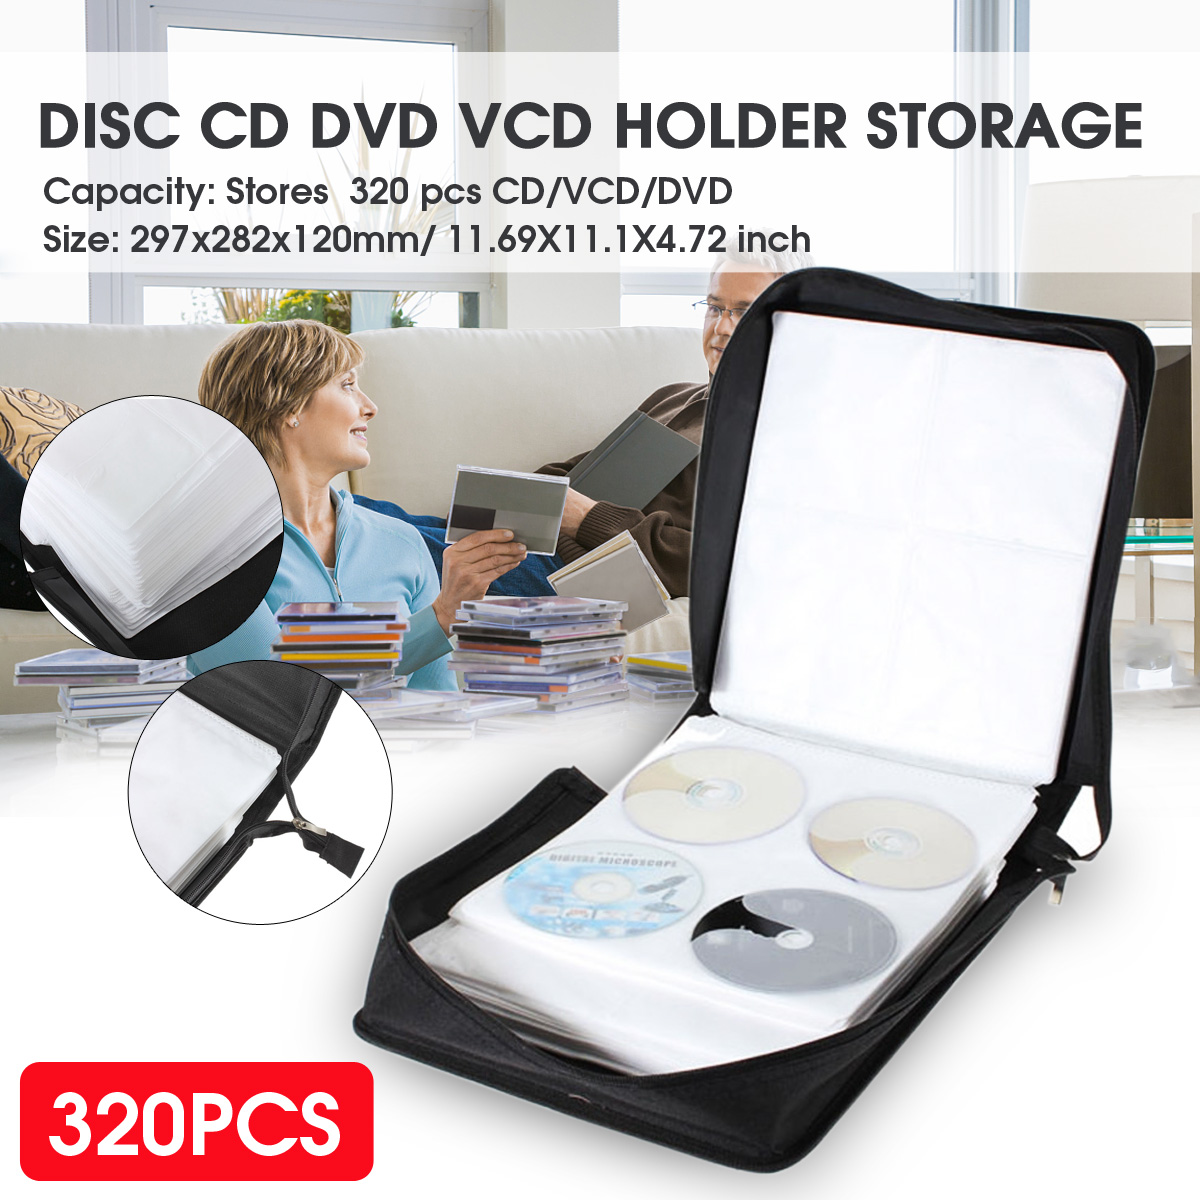 320-pcs-Disc-CD-DVD-VCD-Holder-Storage-Media-Carry-Wallet-Album-Bag-Case-Black-60122-2